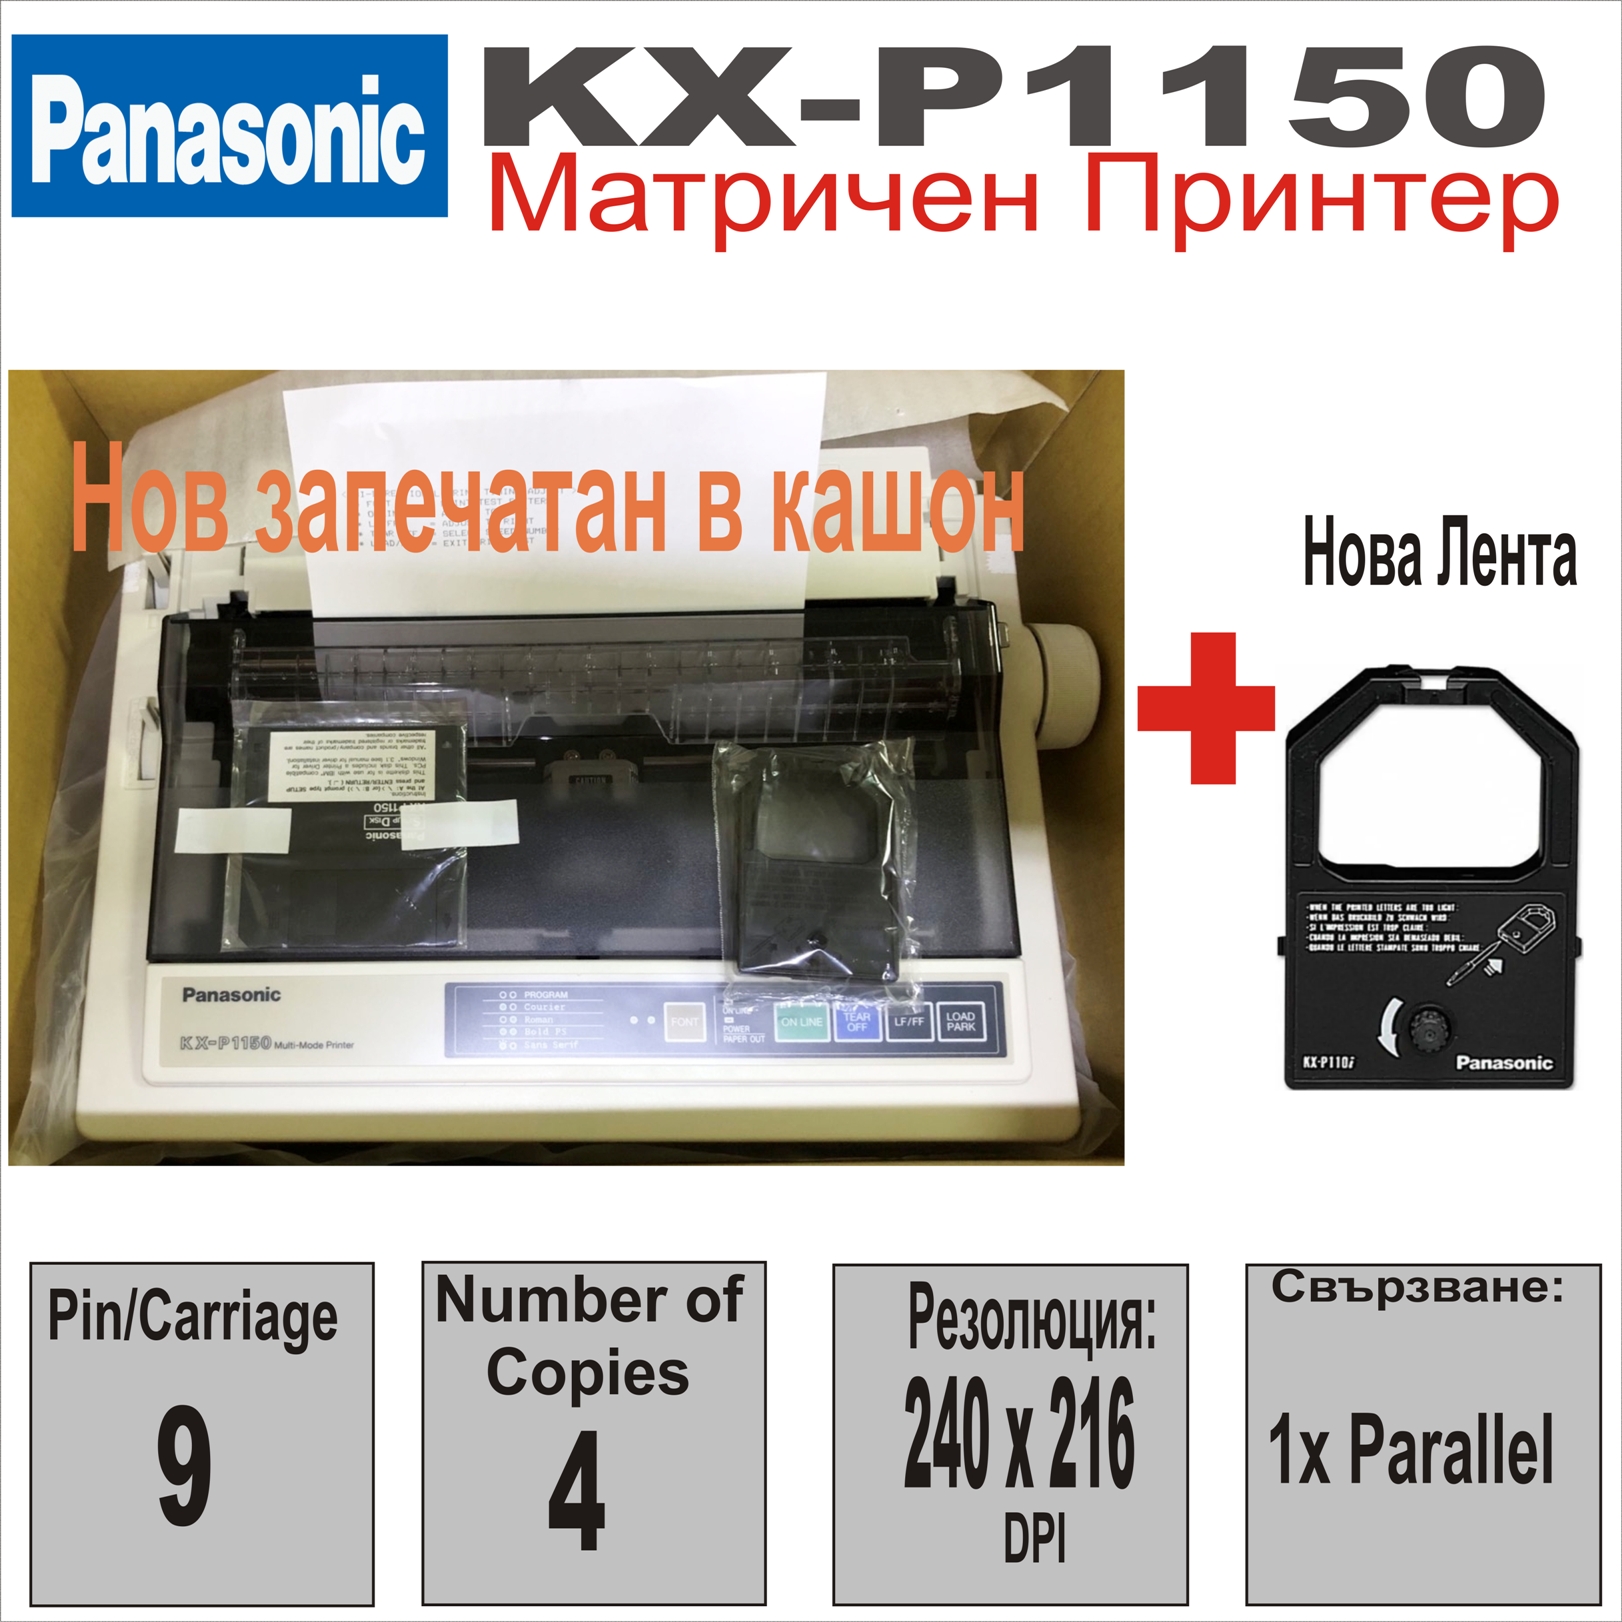 Матричен принтер KX-P1150, 9 pins 80 column